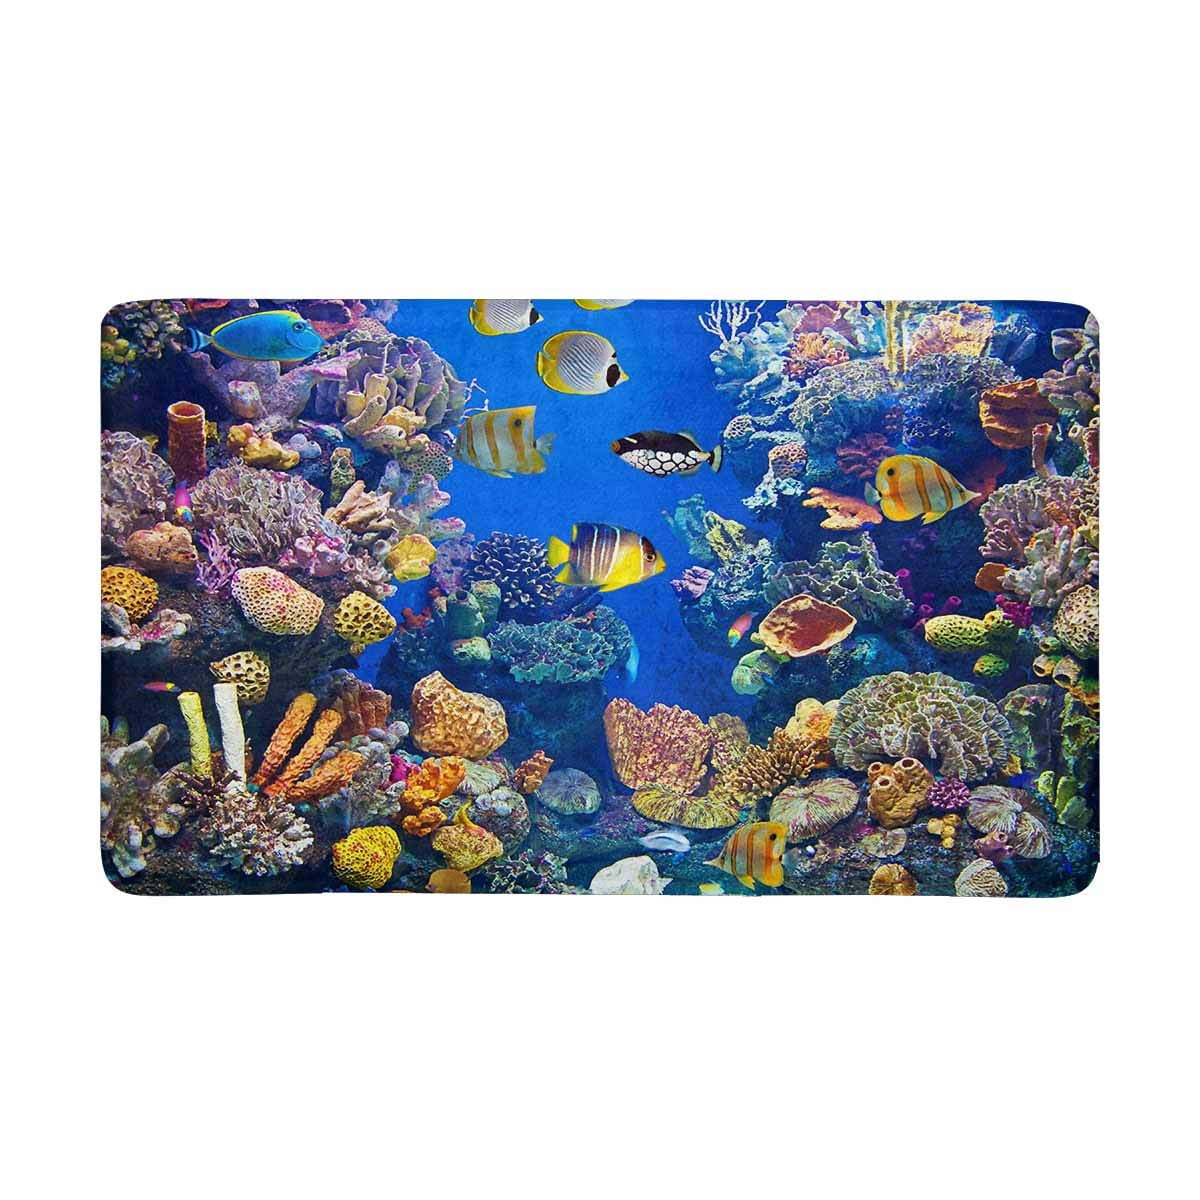 MKHERT Colorful Coral Fishes Under Ocean Doormat Rug Home Decor Floor ...